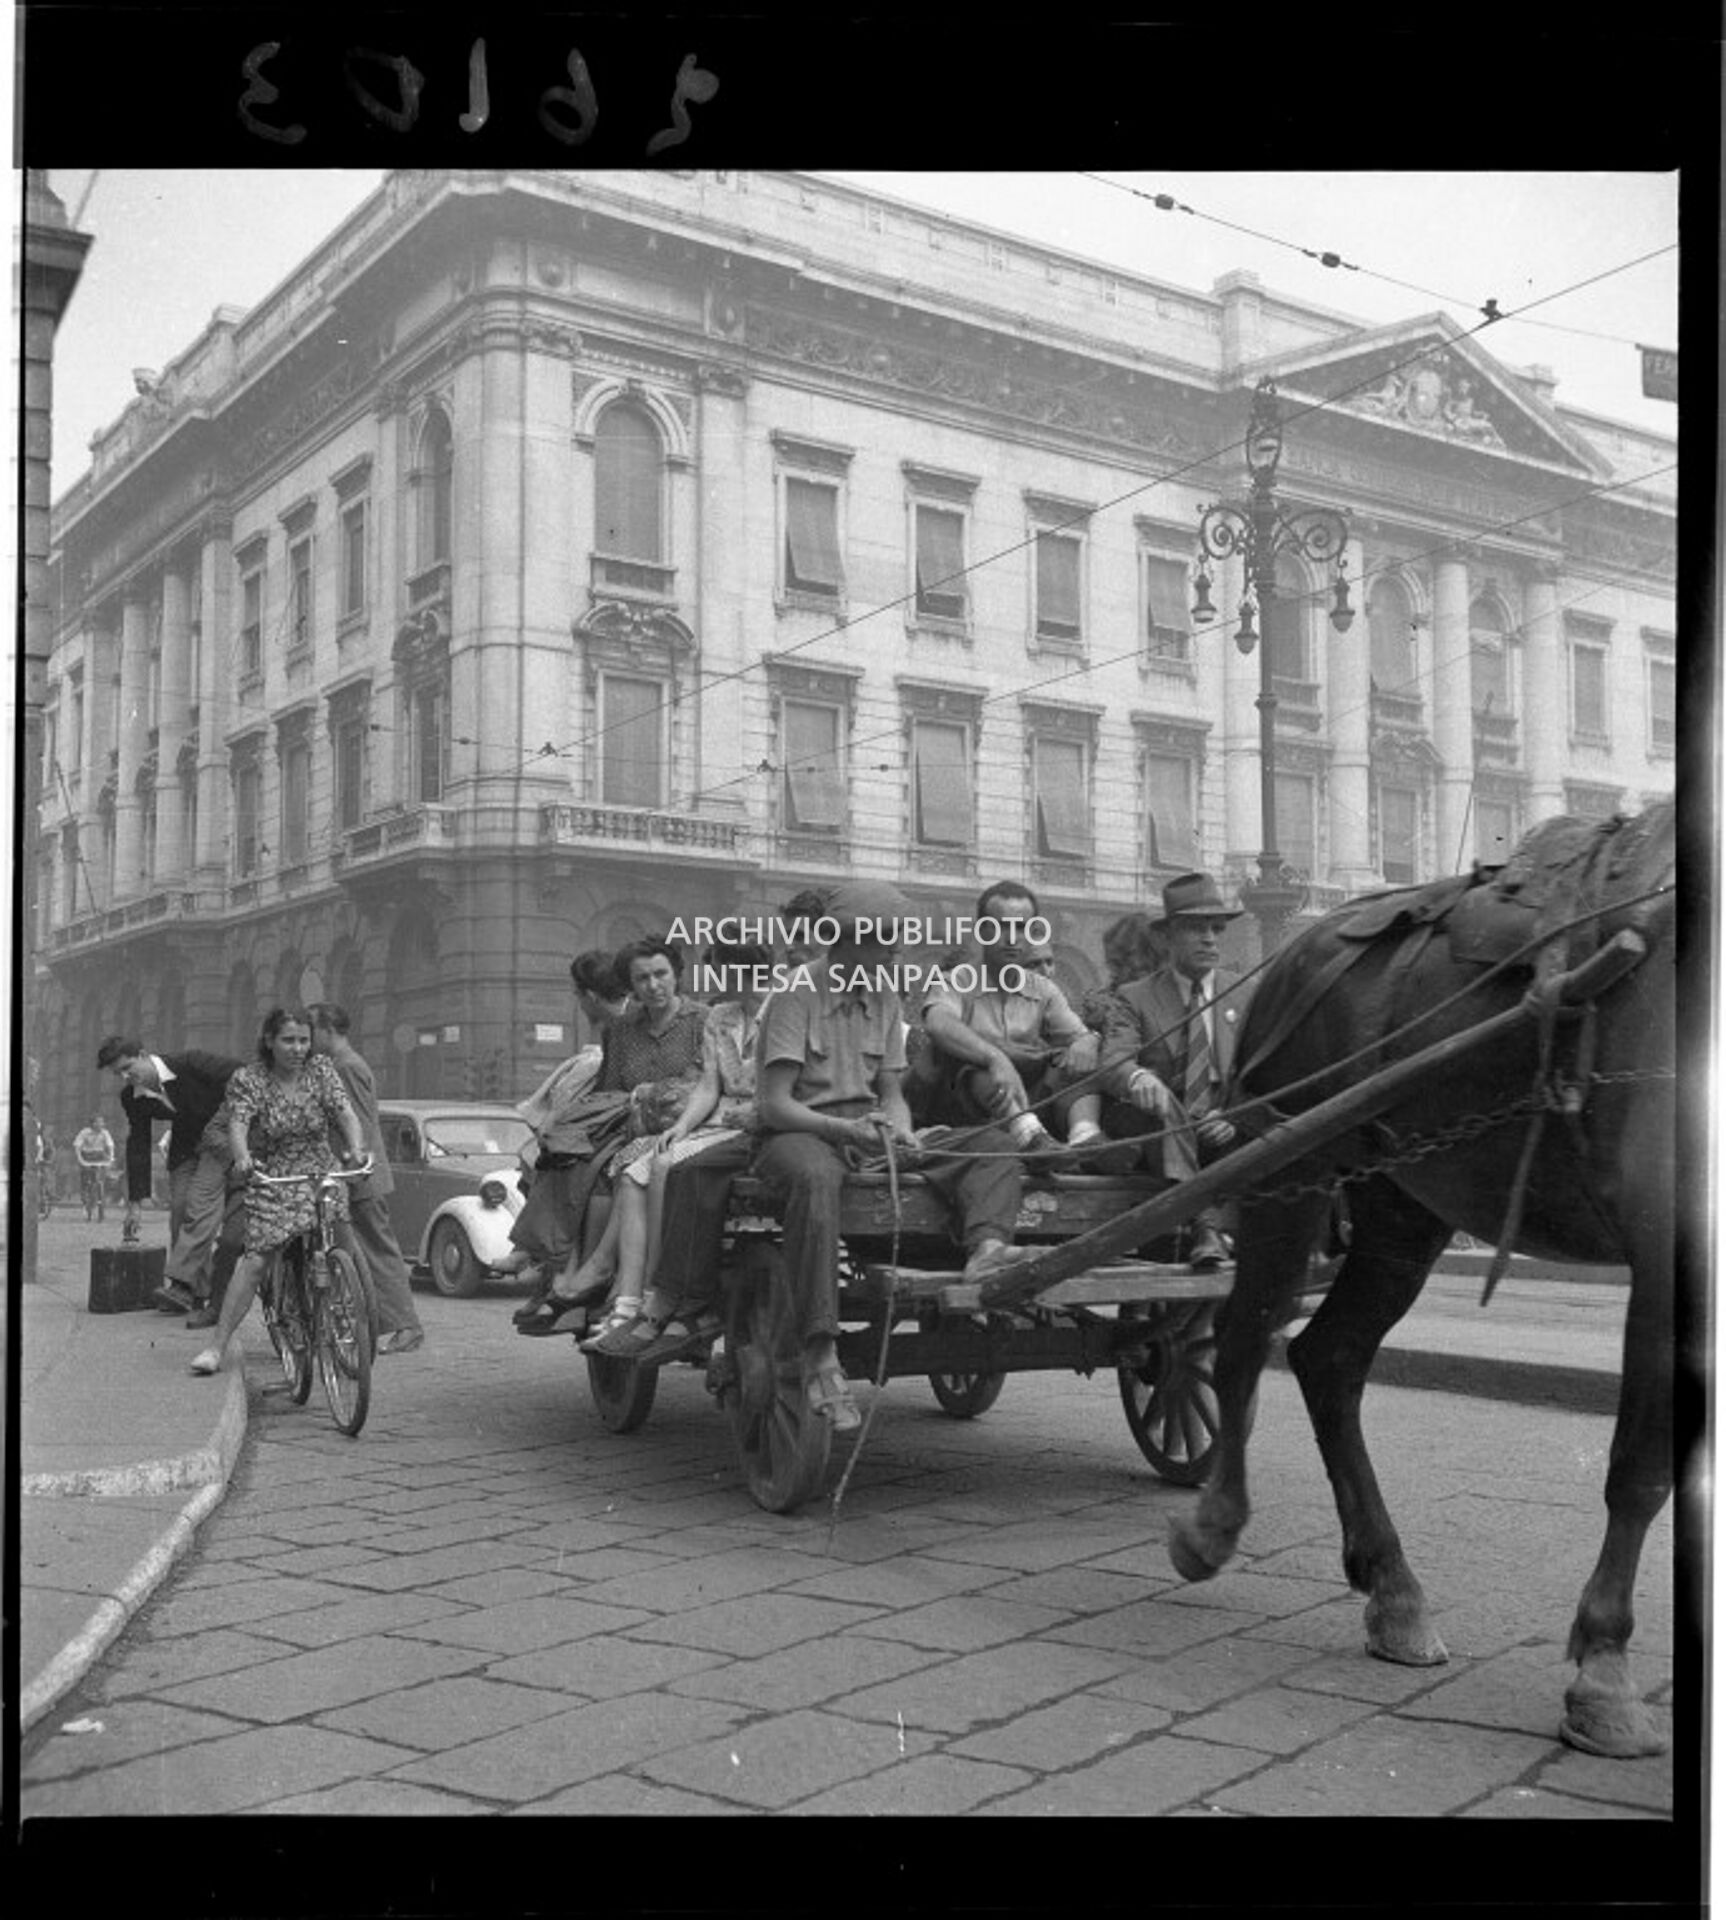 Un carro carico di persone, trainato da un cavallo, in piazza della Scala a Milano. Sullo sfondo il Palazzo della Banca Commerciale Italiana